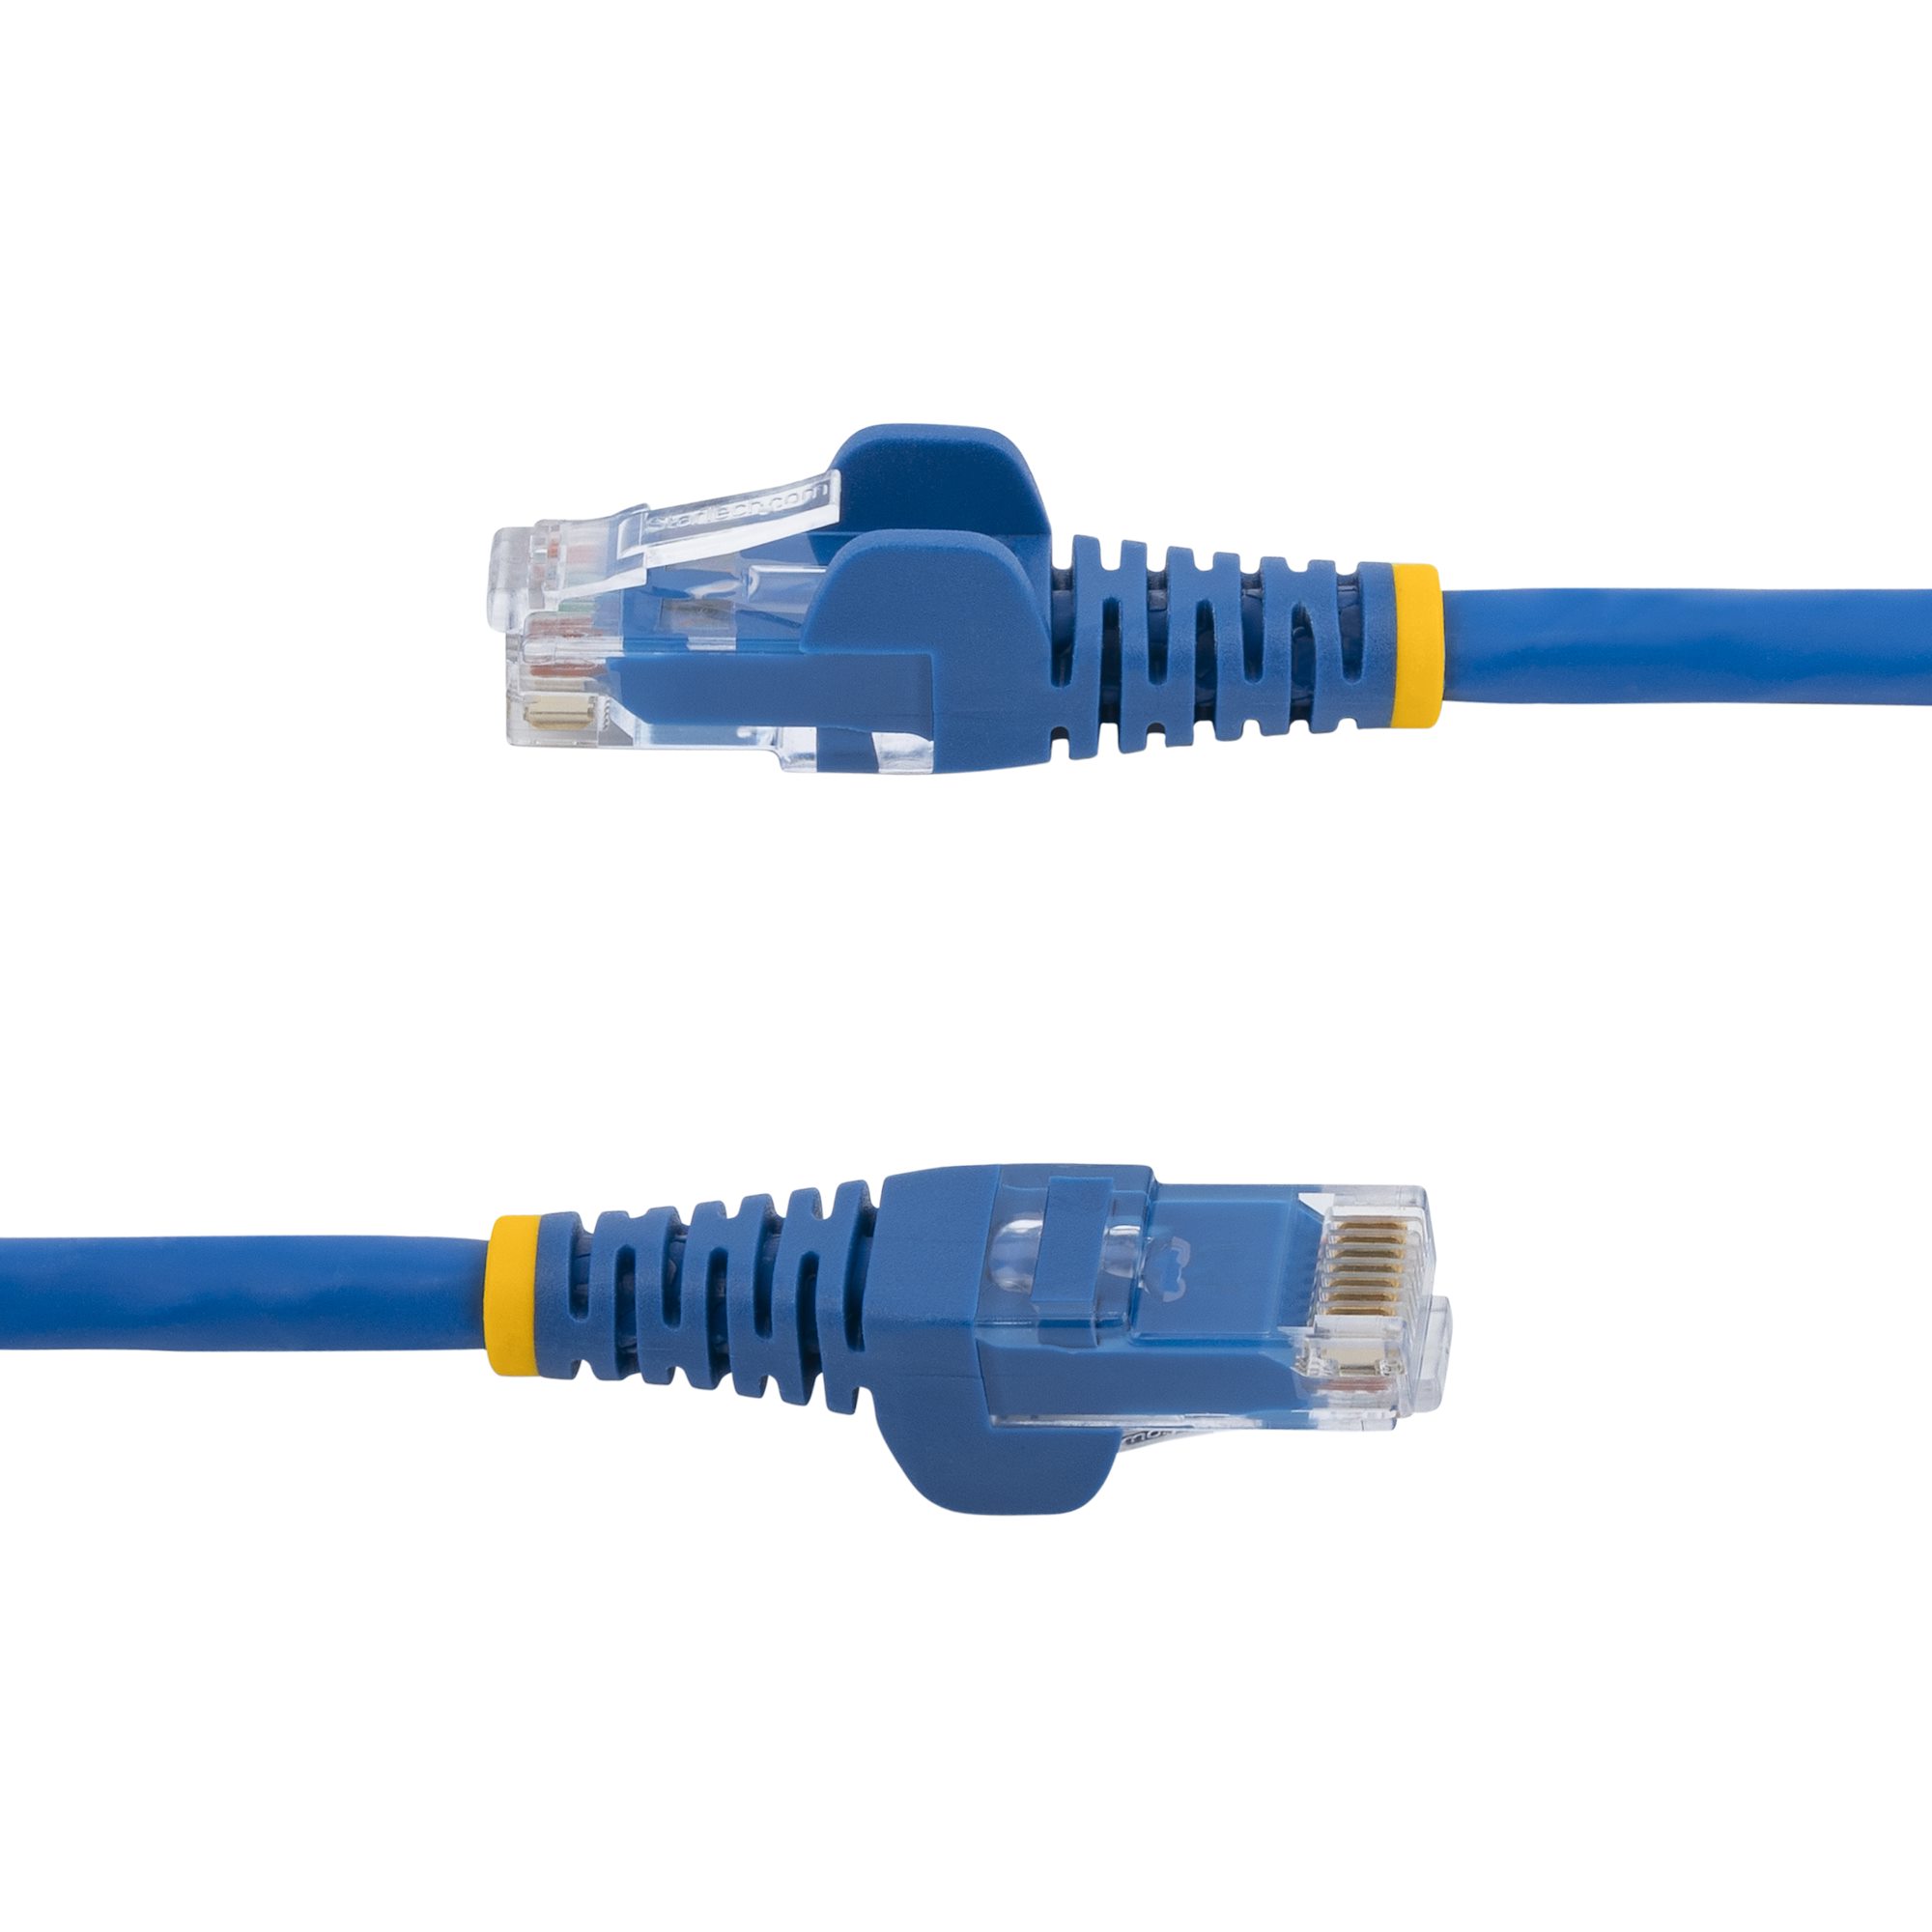 Câble Ethernet CAT6 3m - LSZH (Low Smoke Zero Halogen) - Cordon RJ45 UTP  Anti-accrochage 10 GbE LAN - Câble Réseau Internet 650MHz 100W PoE - Gris 